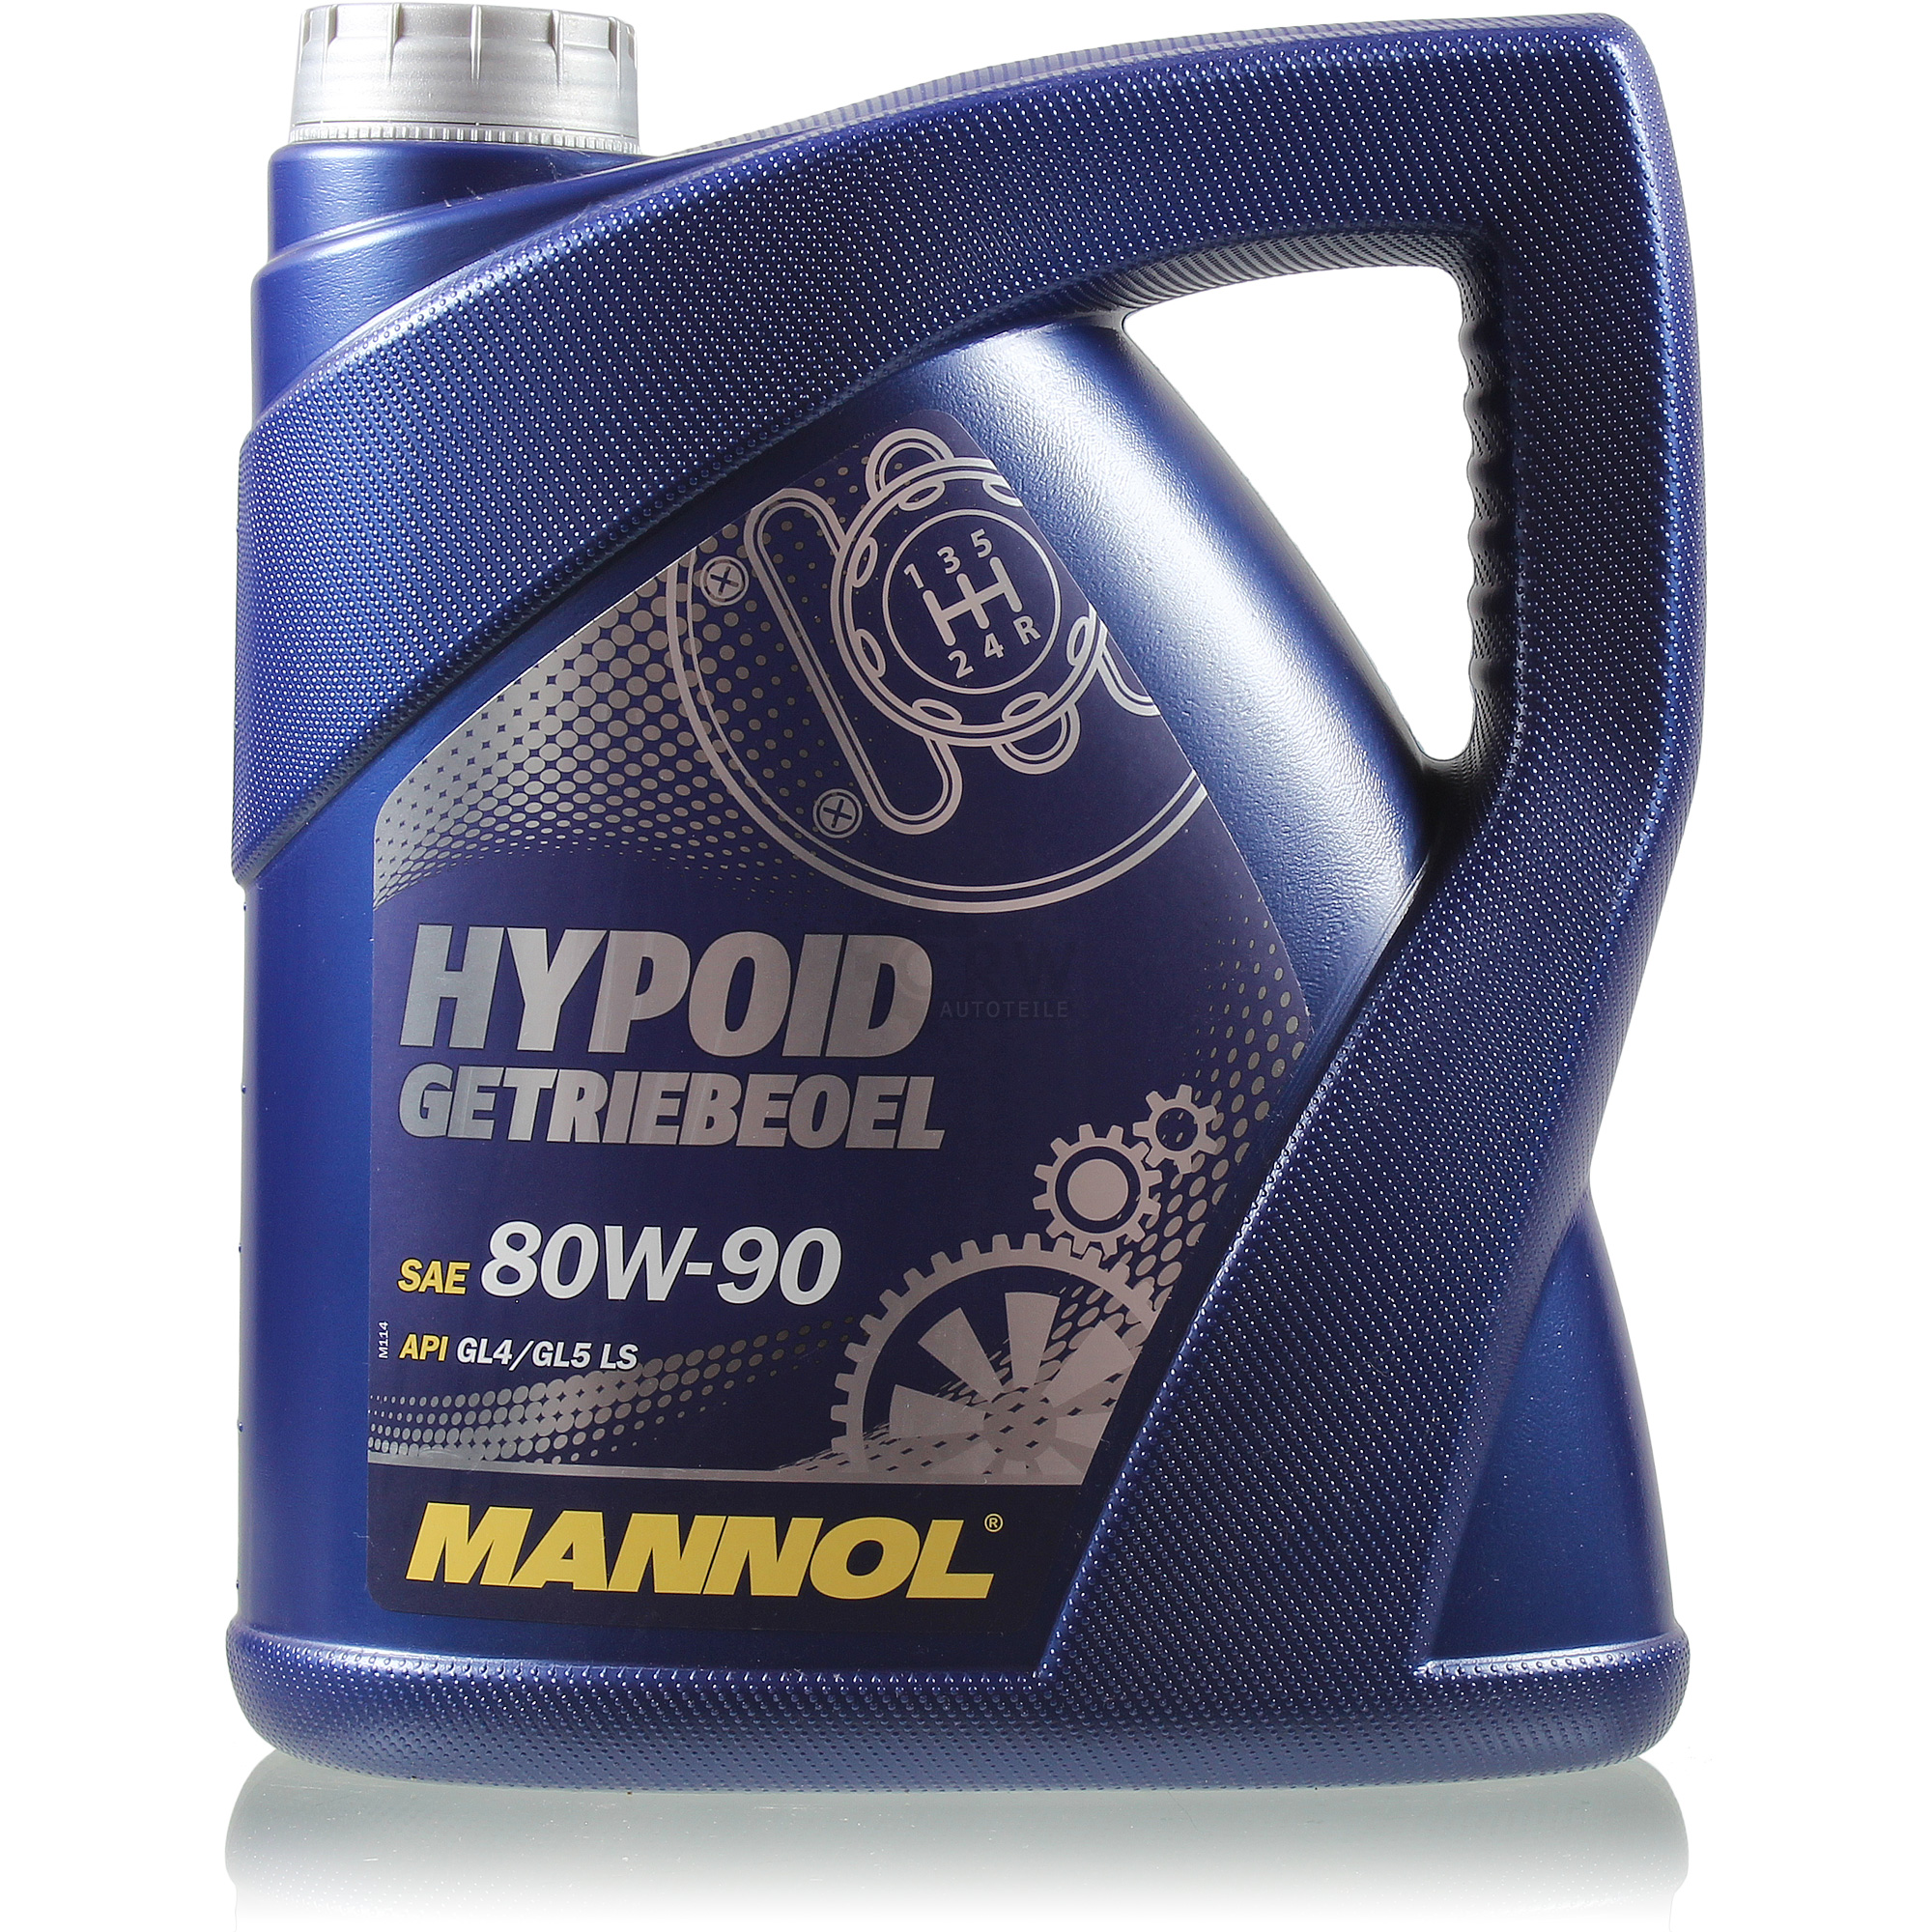  MANNOL 1x4 Liter Hypoid Öl Getriebeöl 80W-90 API GL 4/GL 5 LS MN8106-4